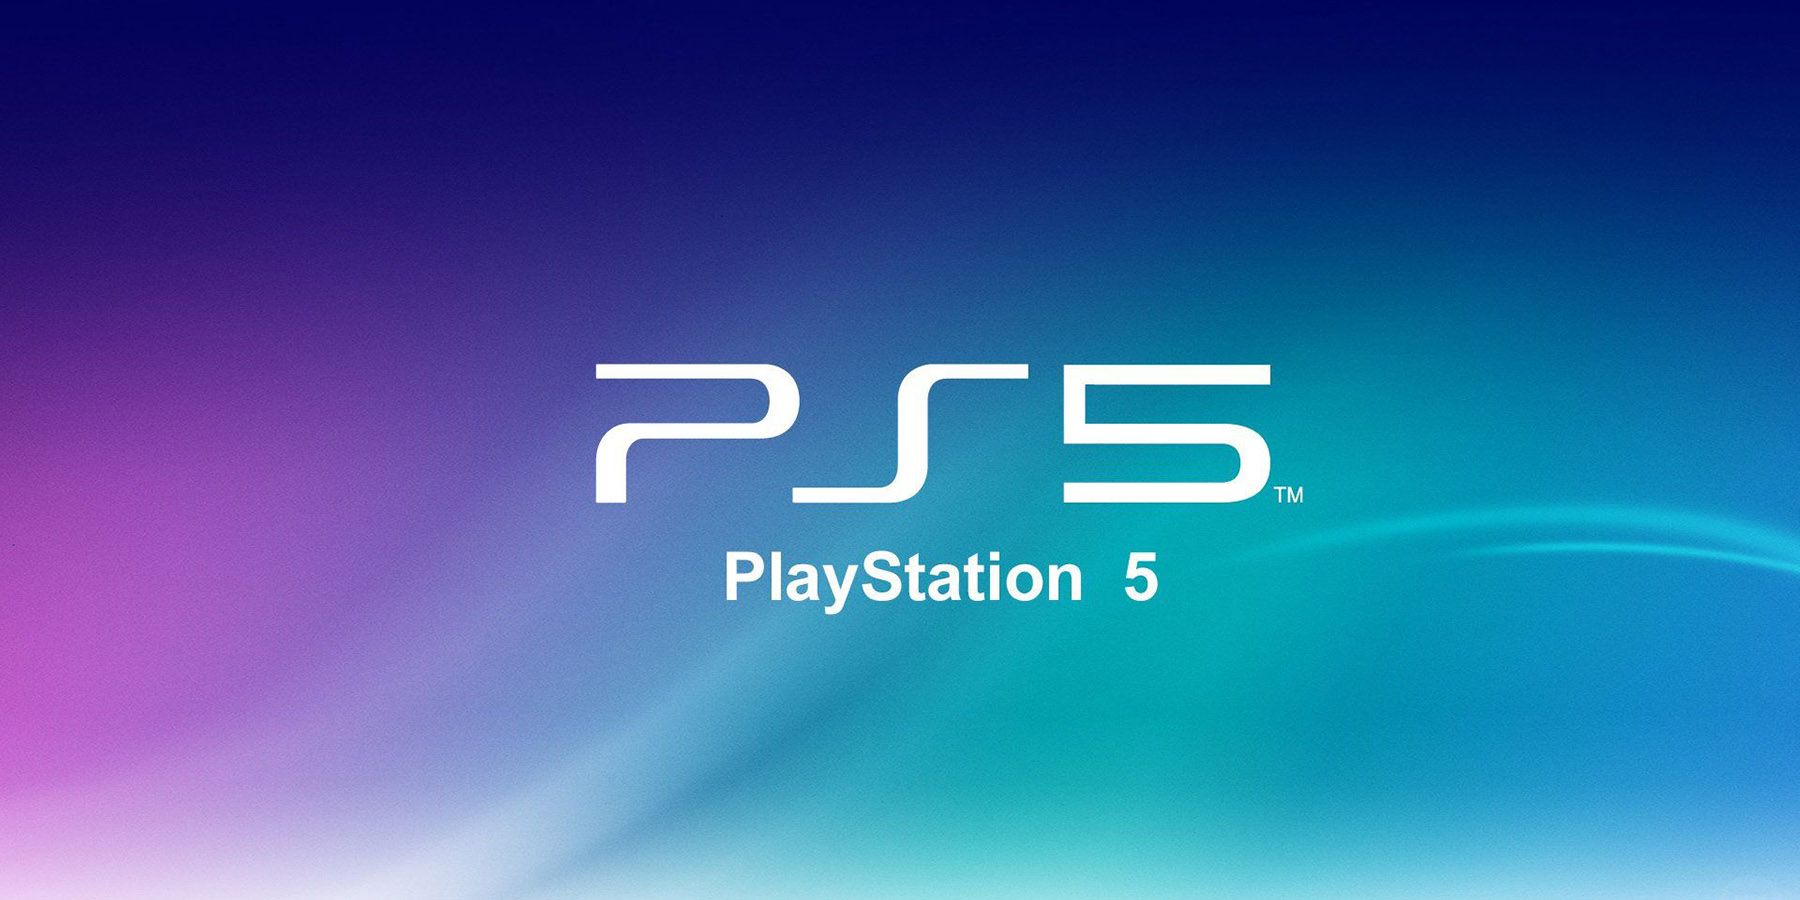 A Sony Patent azt sugallja, hogy a PlayStation most hozzáadhat PS5 játékokat